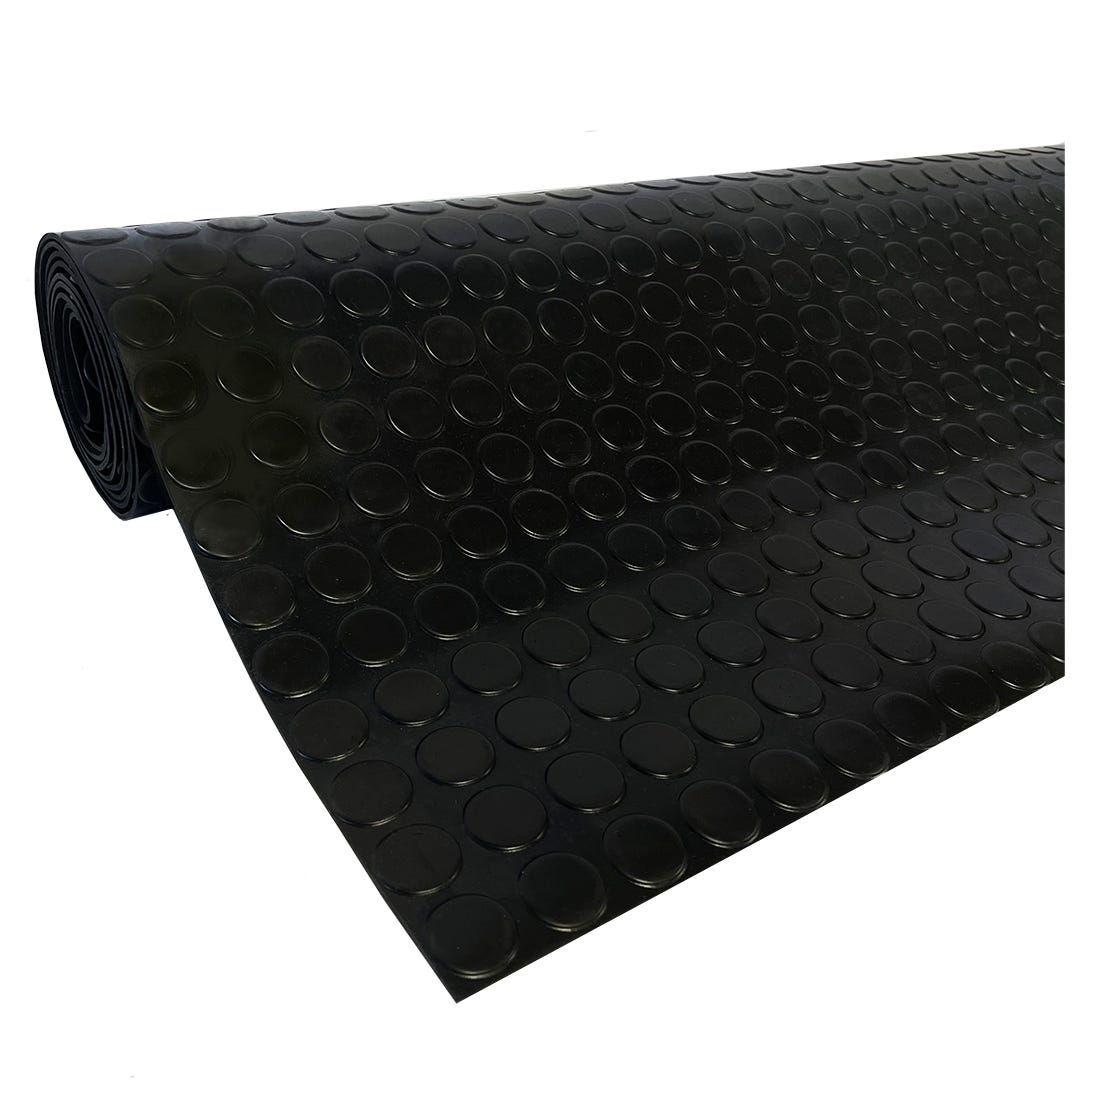 Acomoda Textil – Pavimento de Caucho 1x2,5m Antideslizante, Protector de  Suelo para Interior y Exterior. Rollo de Goma Fácil Instalación.